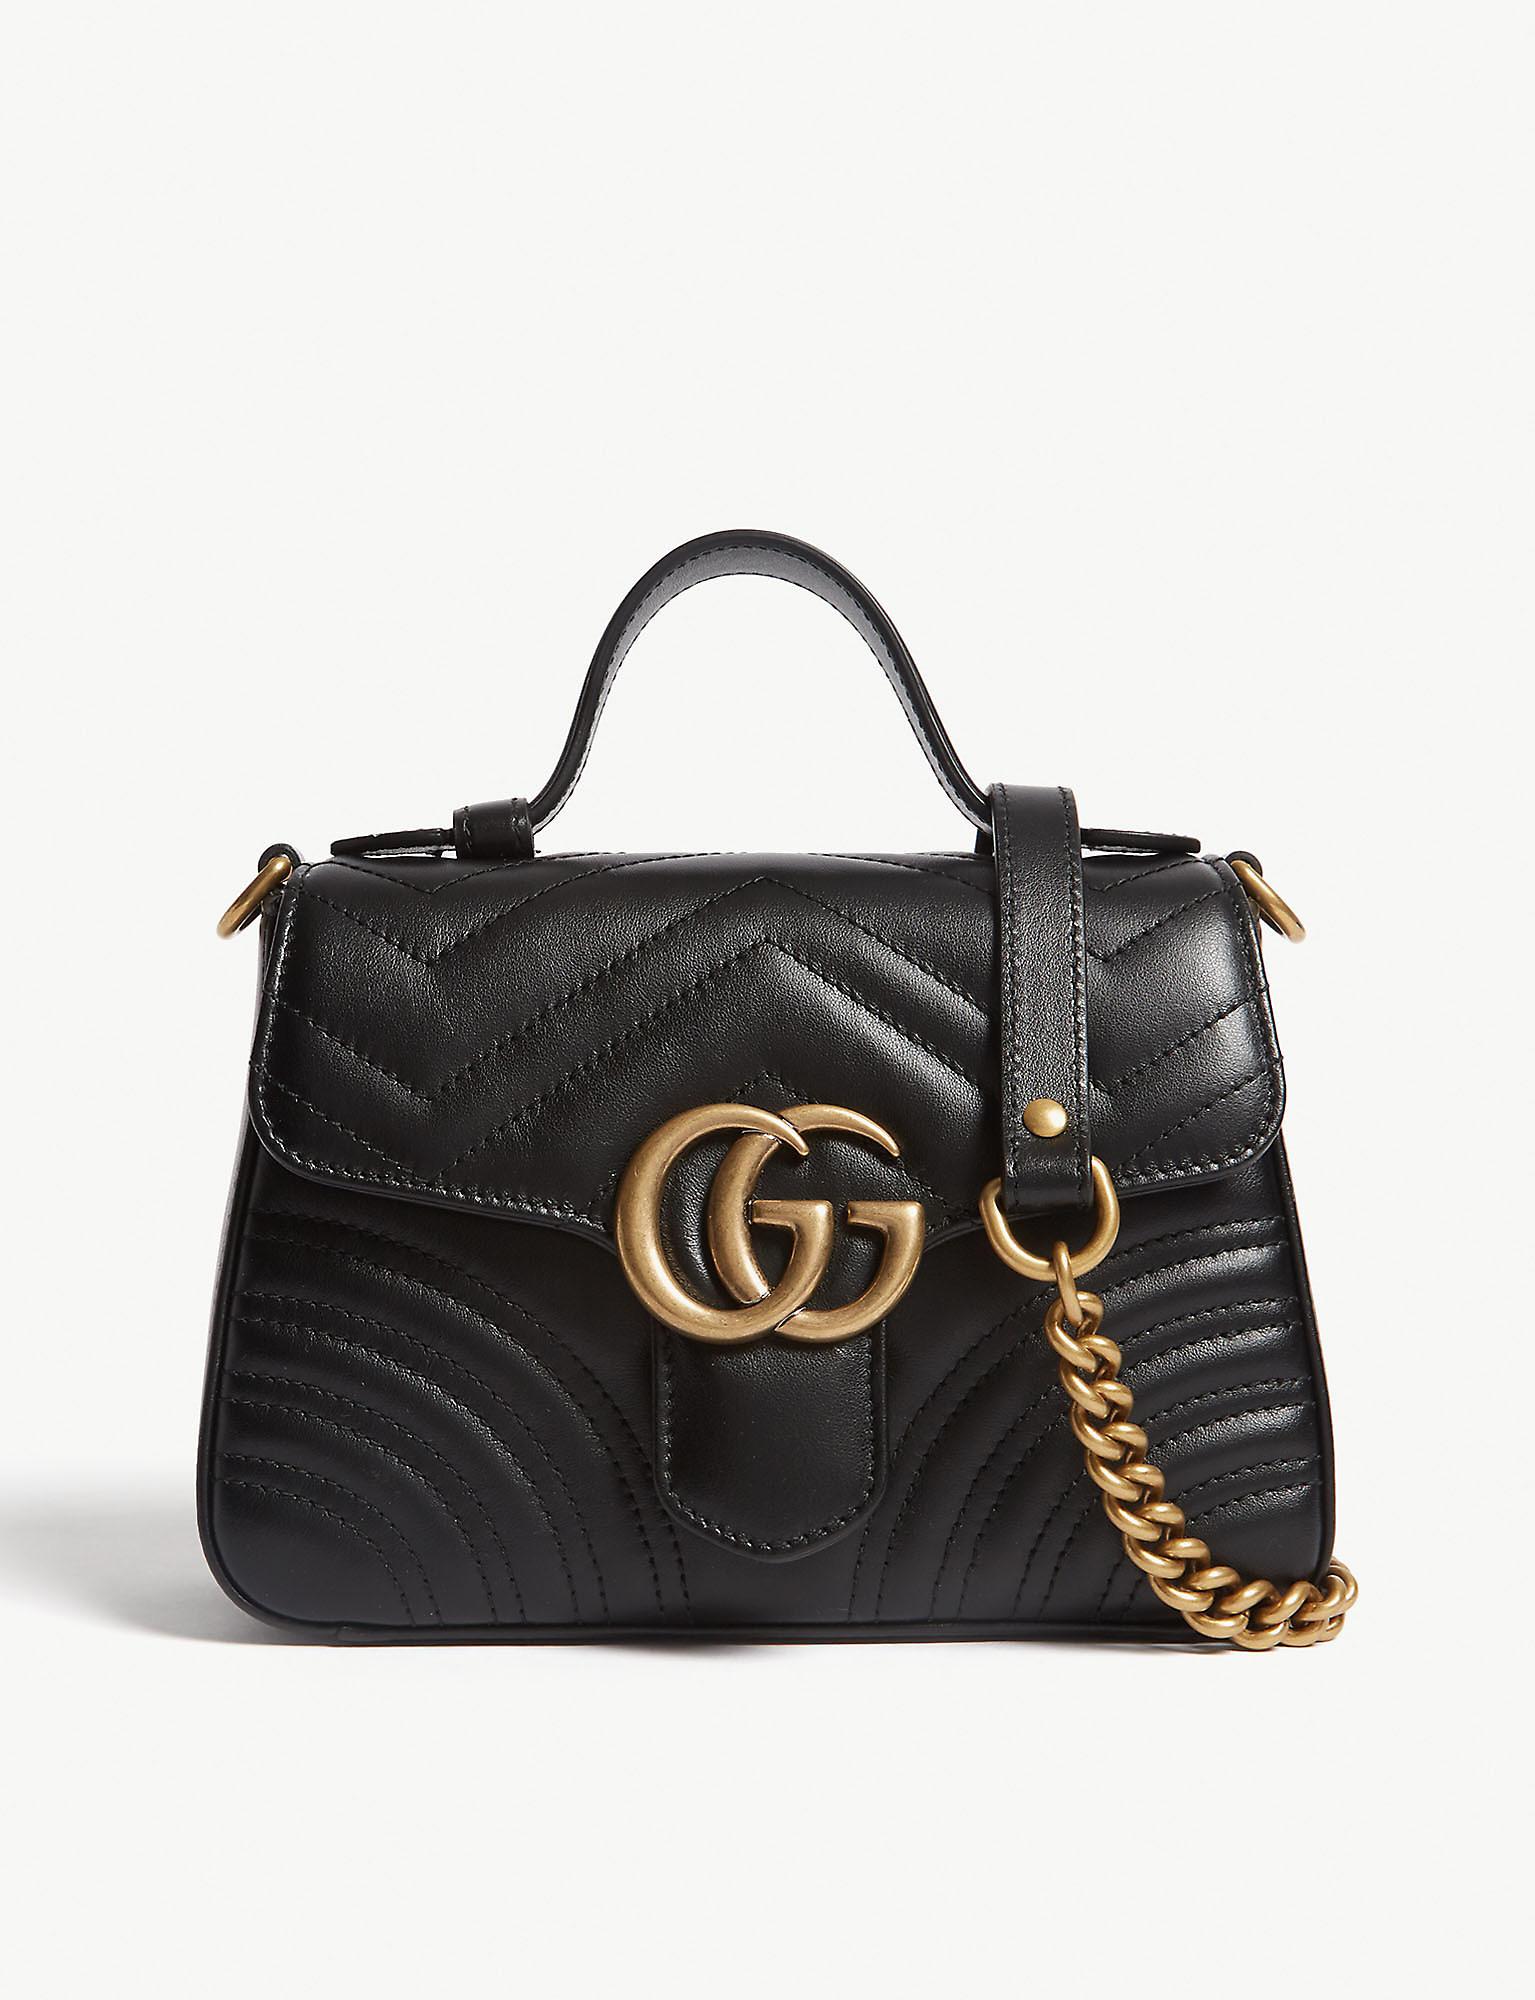 Gucci GG Marmont Mini Leather Shoulder Bag in Nero,Nero (Black) - Save ...